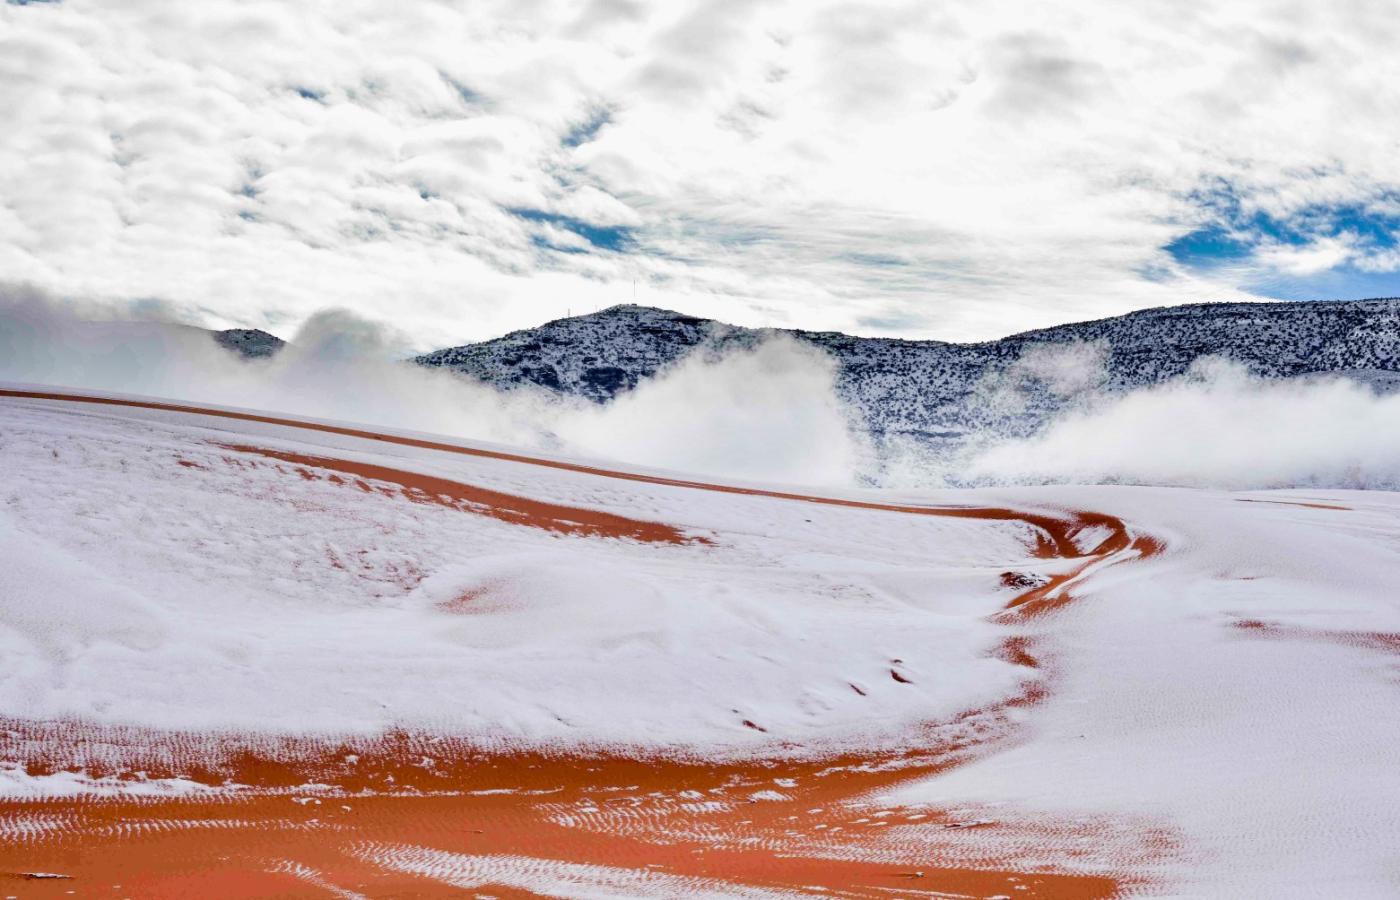 Spadło sporo śniegu, około 40 cm, więc biały puch pokrywał pomarańczowe wydmy pustyni aż do godzin popołudniowych.